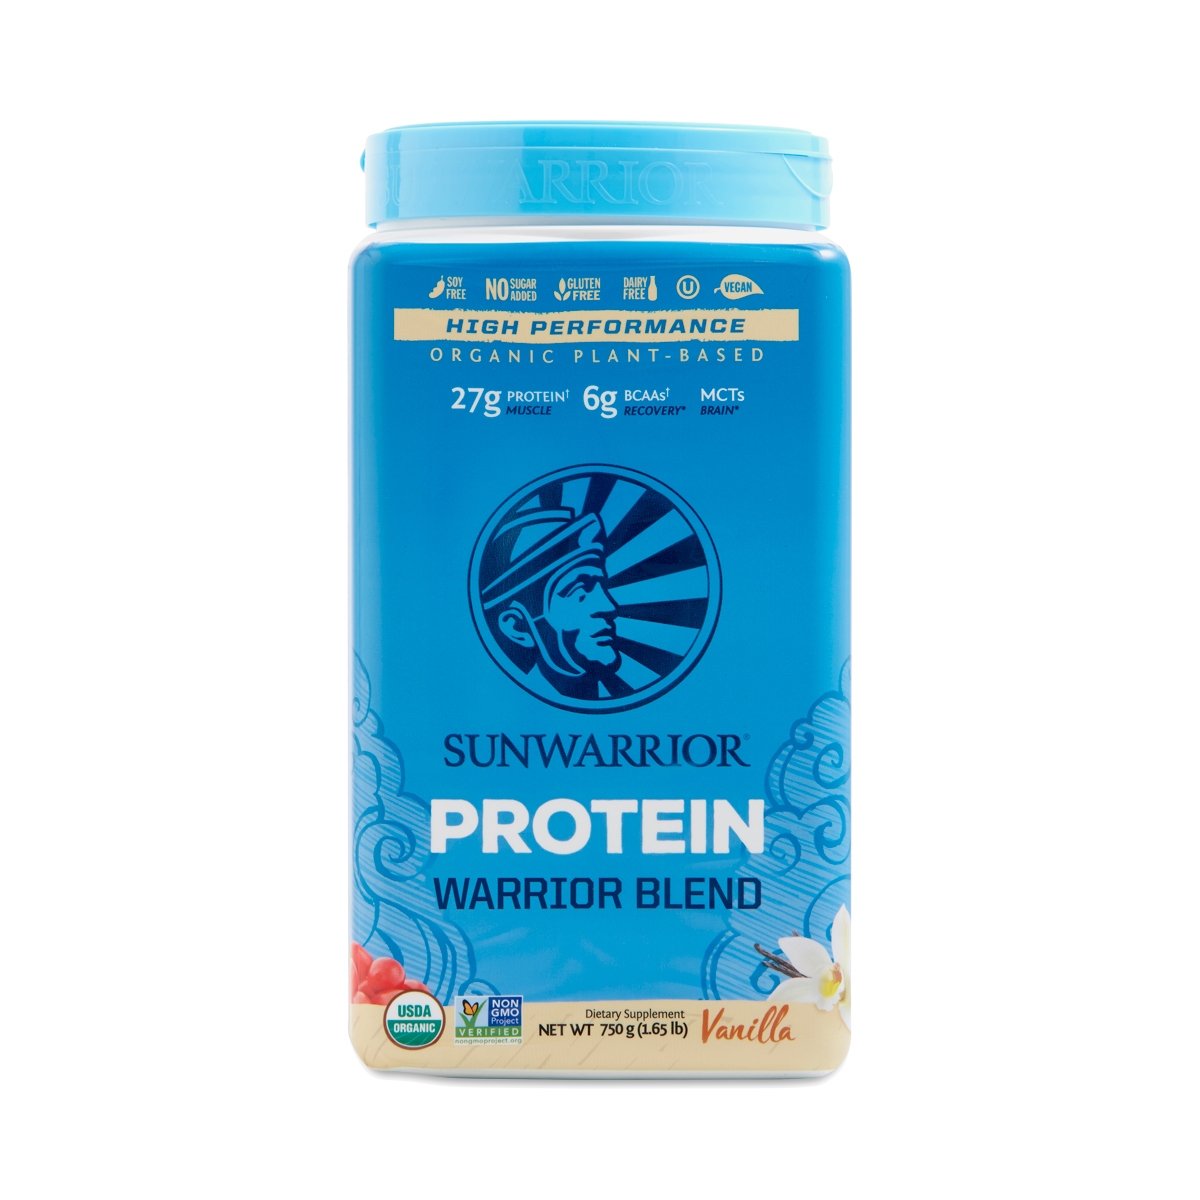 Sunwarrior Warrior Vanilla Protein Blend 1.65 lb container